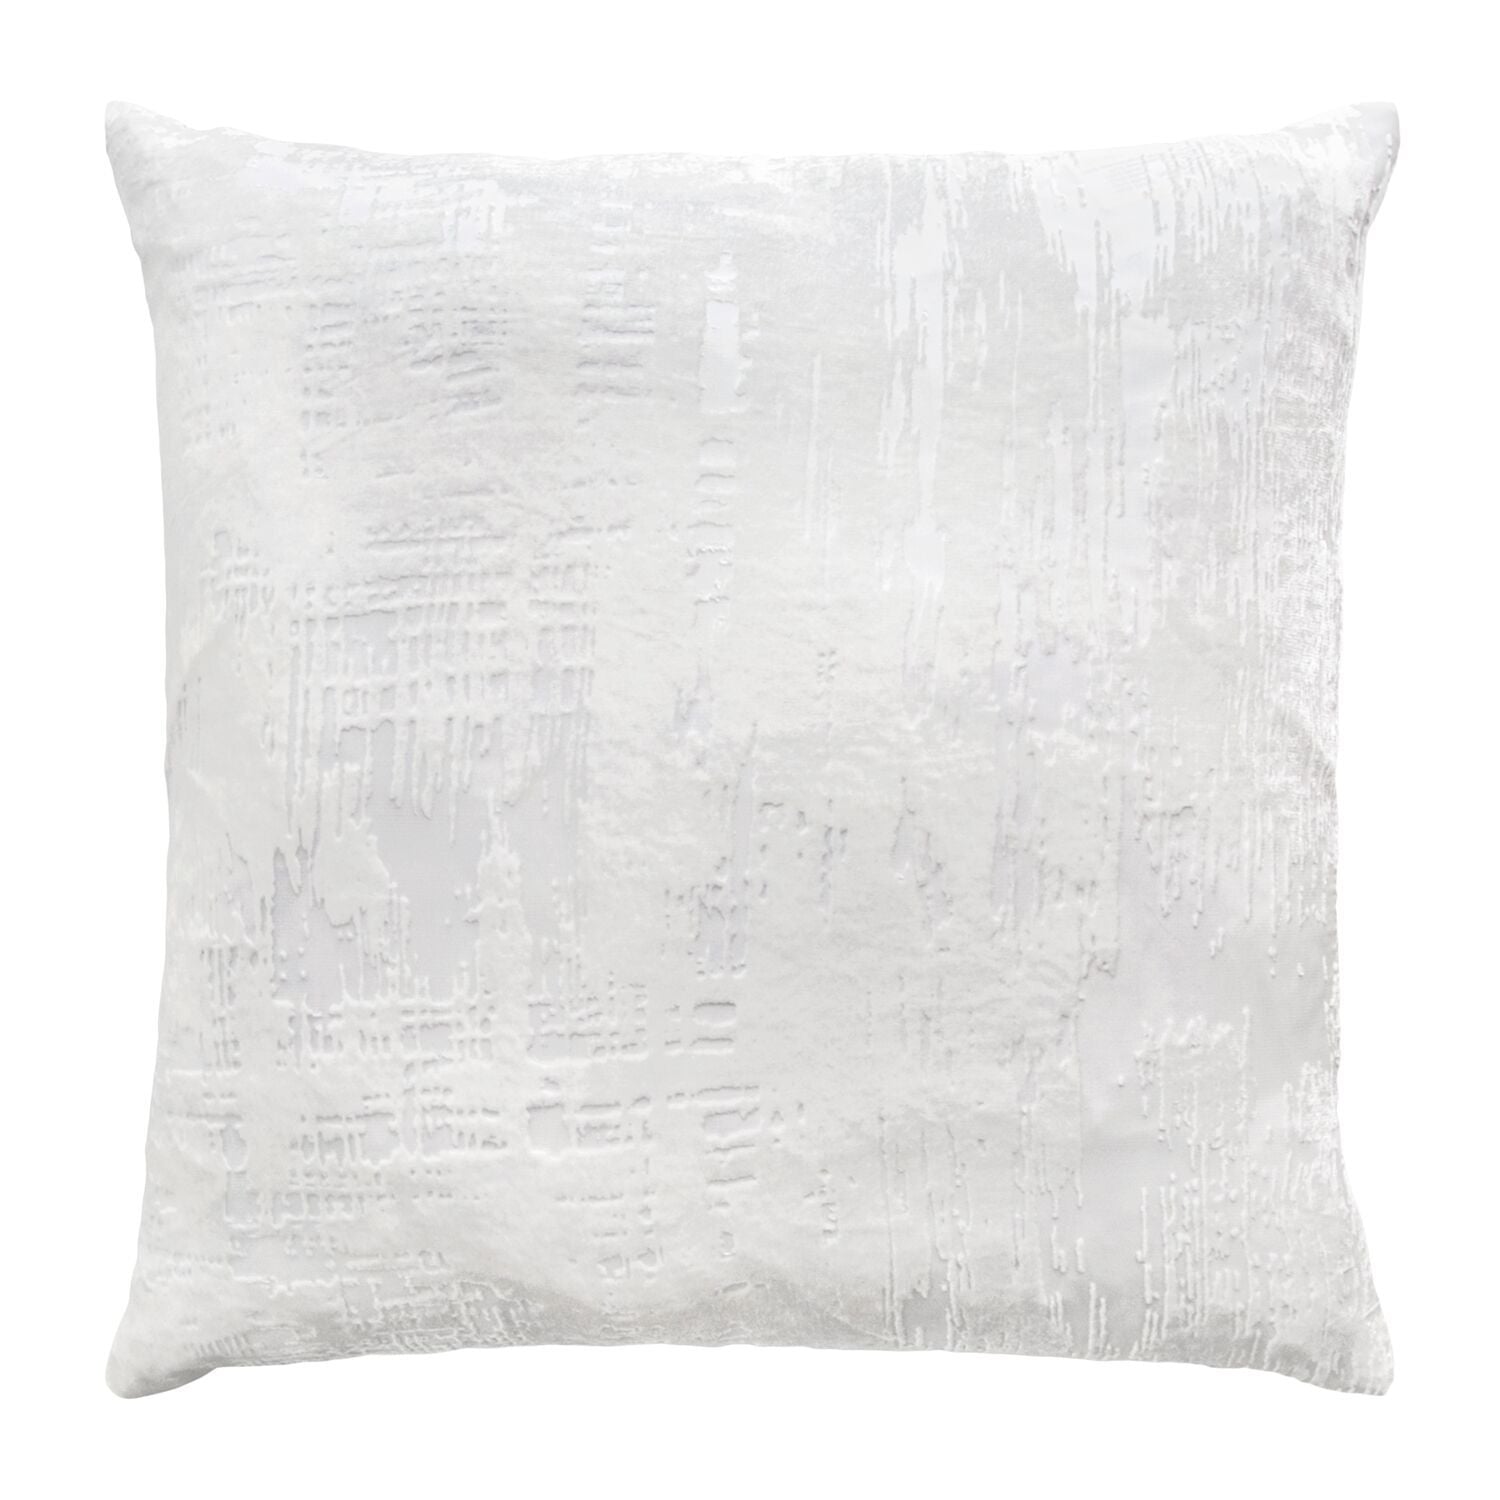 Brush Stroke White Velvet Pillows by Kevin O'Brien Studio